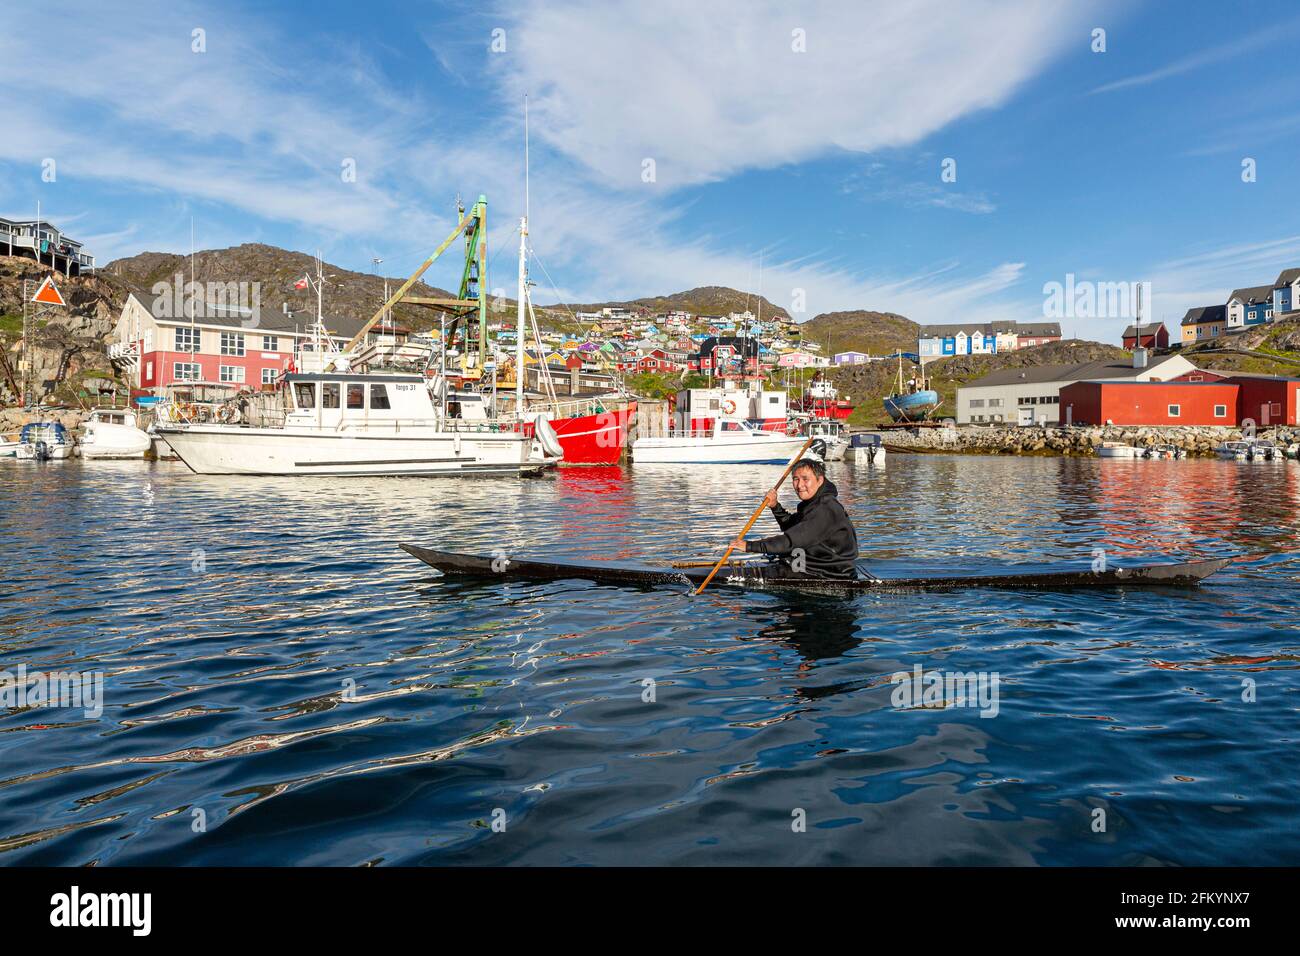 Un pagayeur local fait la démonstration de techniques de kayak dans la ville groenlandaise de Qaquortoq, au Groenland. Banque D'Images